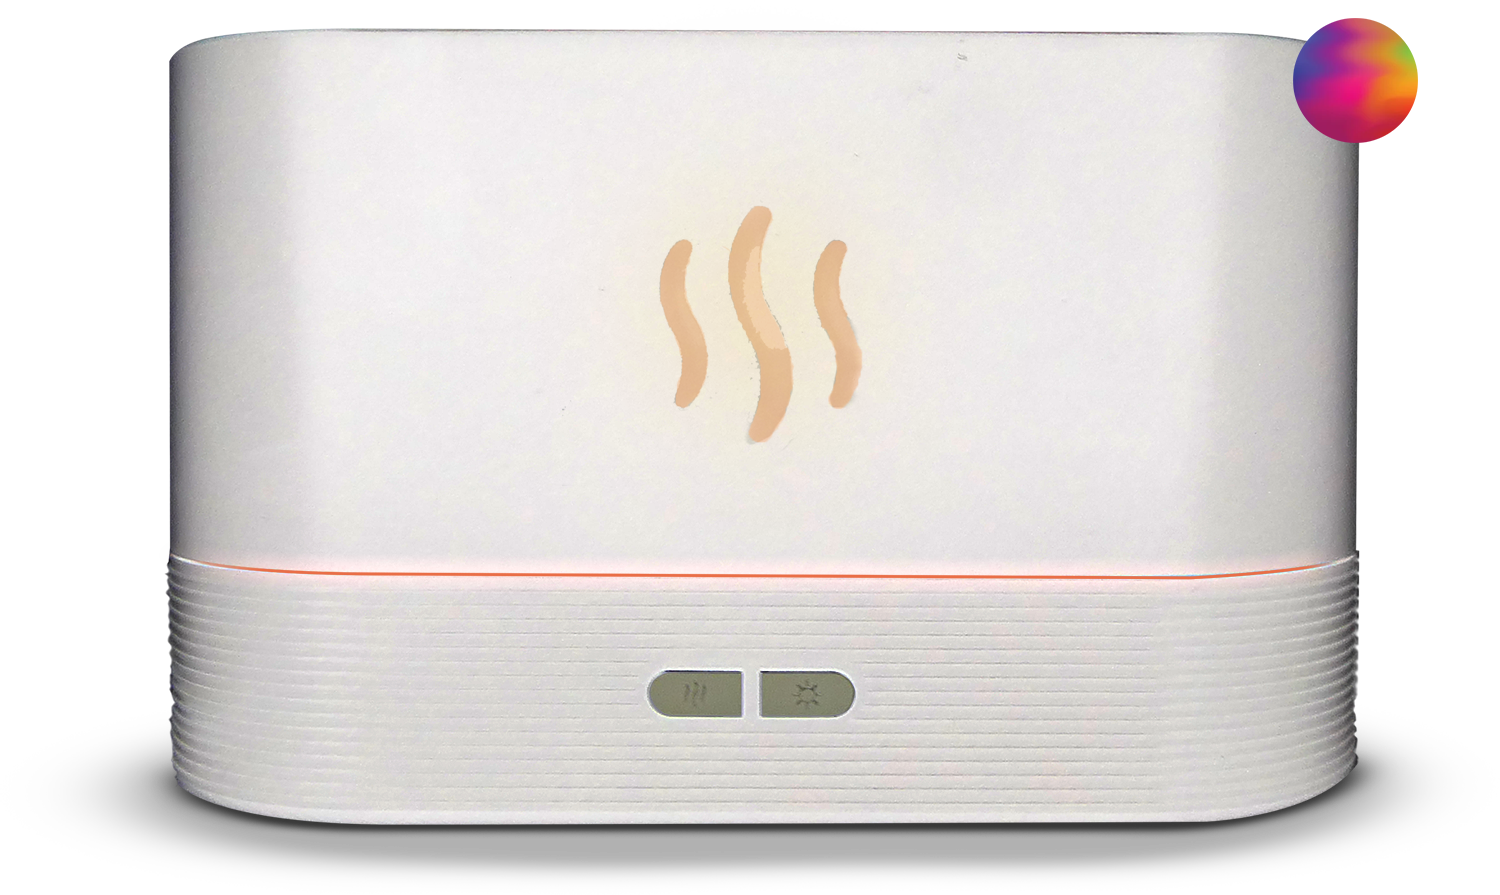 Nouveau Chaud 300 Ml USB Électrique Aroma Air Diffuseur Bois Ultrasons  Humidificateur Dair Huile Essentielle Cool Mist Maker Pour La Maison  EEA1100 1 Du 3,83 €